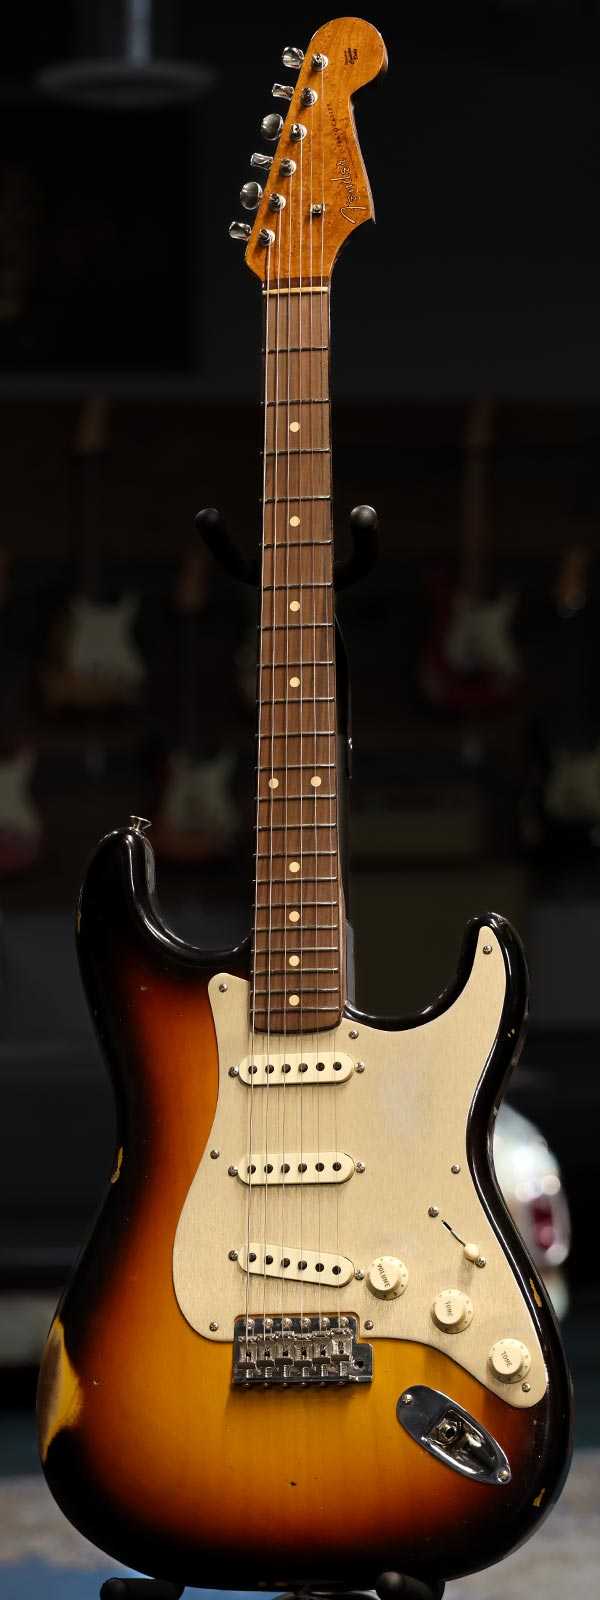 Fender Custom Shop 1960 Stratocaster Roasted Relic Birdseye Maple Neck Rosewood Fretboard 3-Tone Sunburst